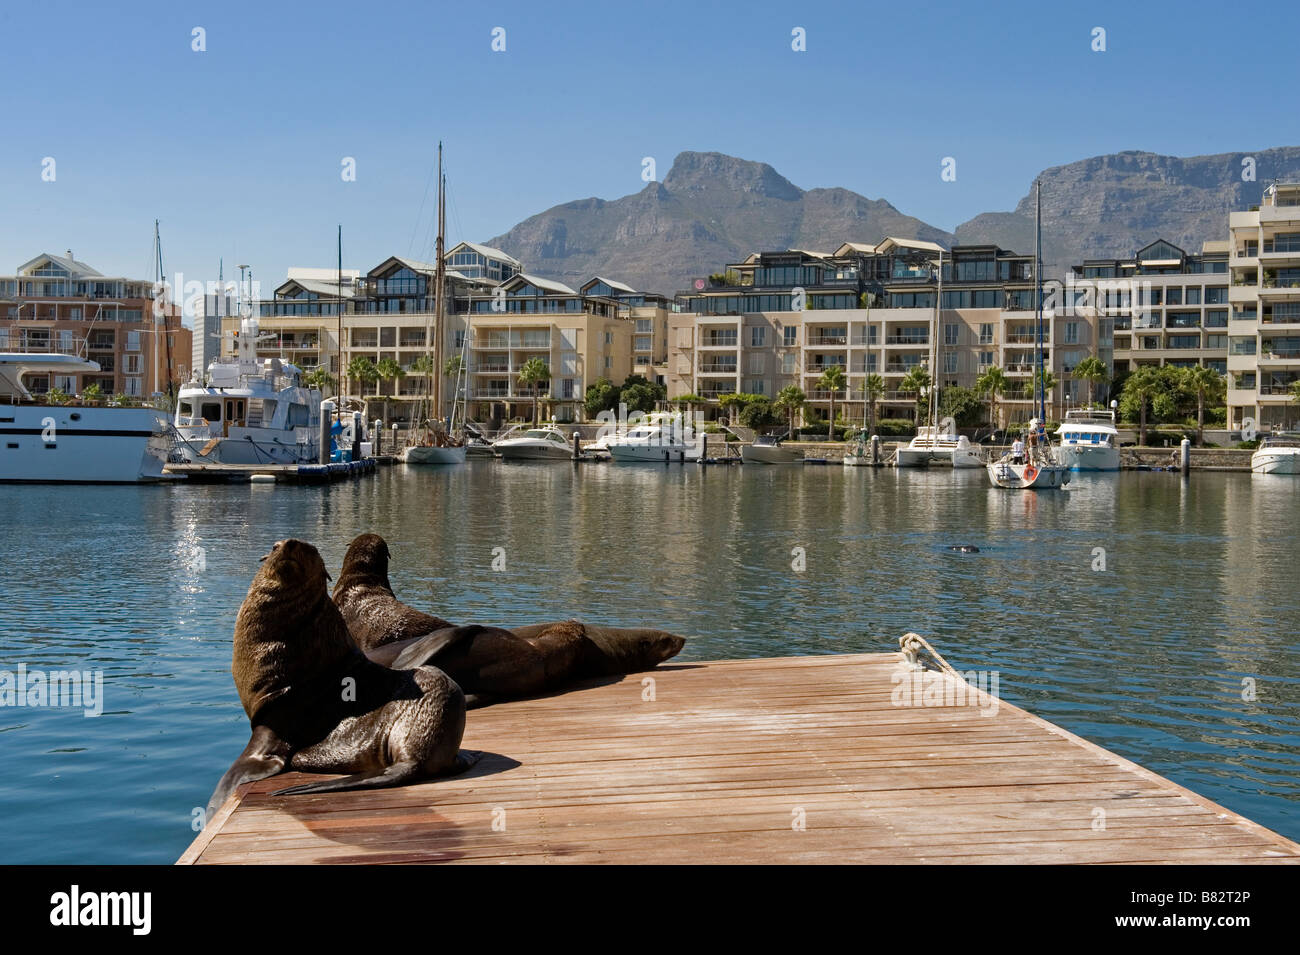 Kap-Seebären (Arctocephalus percivali) Victoria and Alfred Waterfront Kapstadt Südafrika Stockfoto